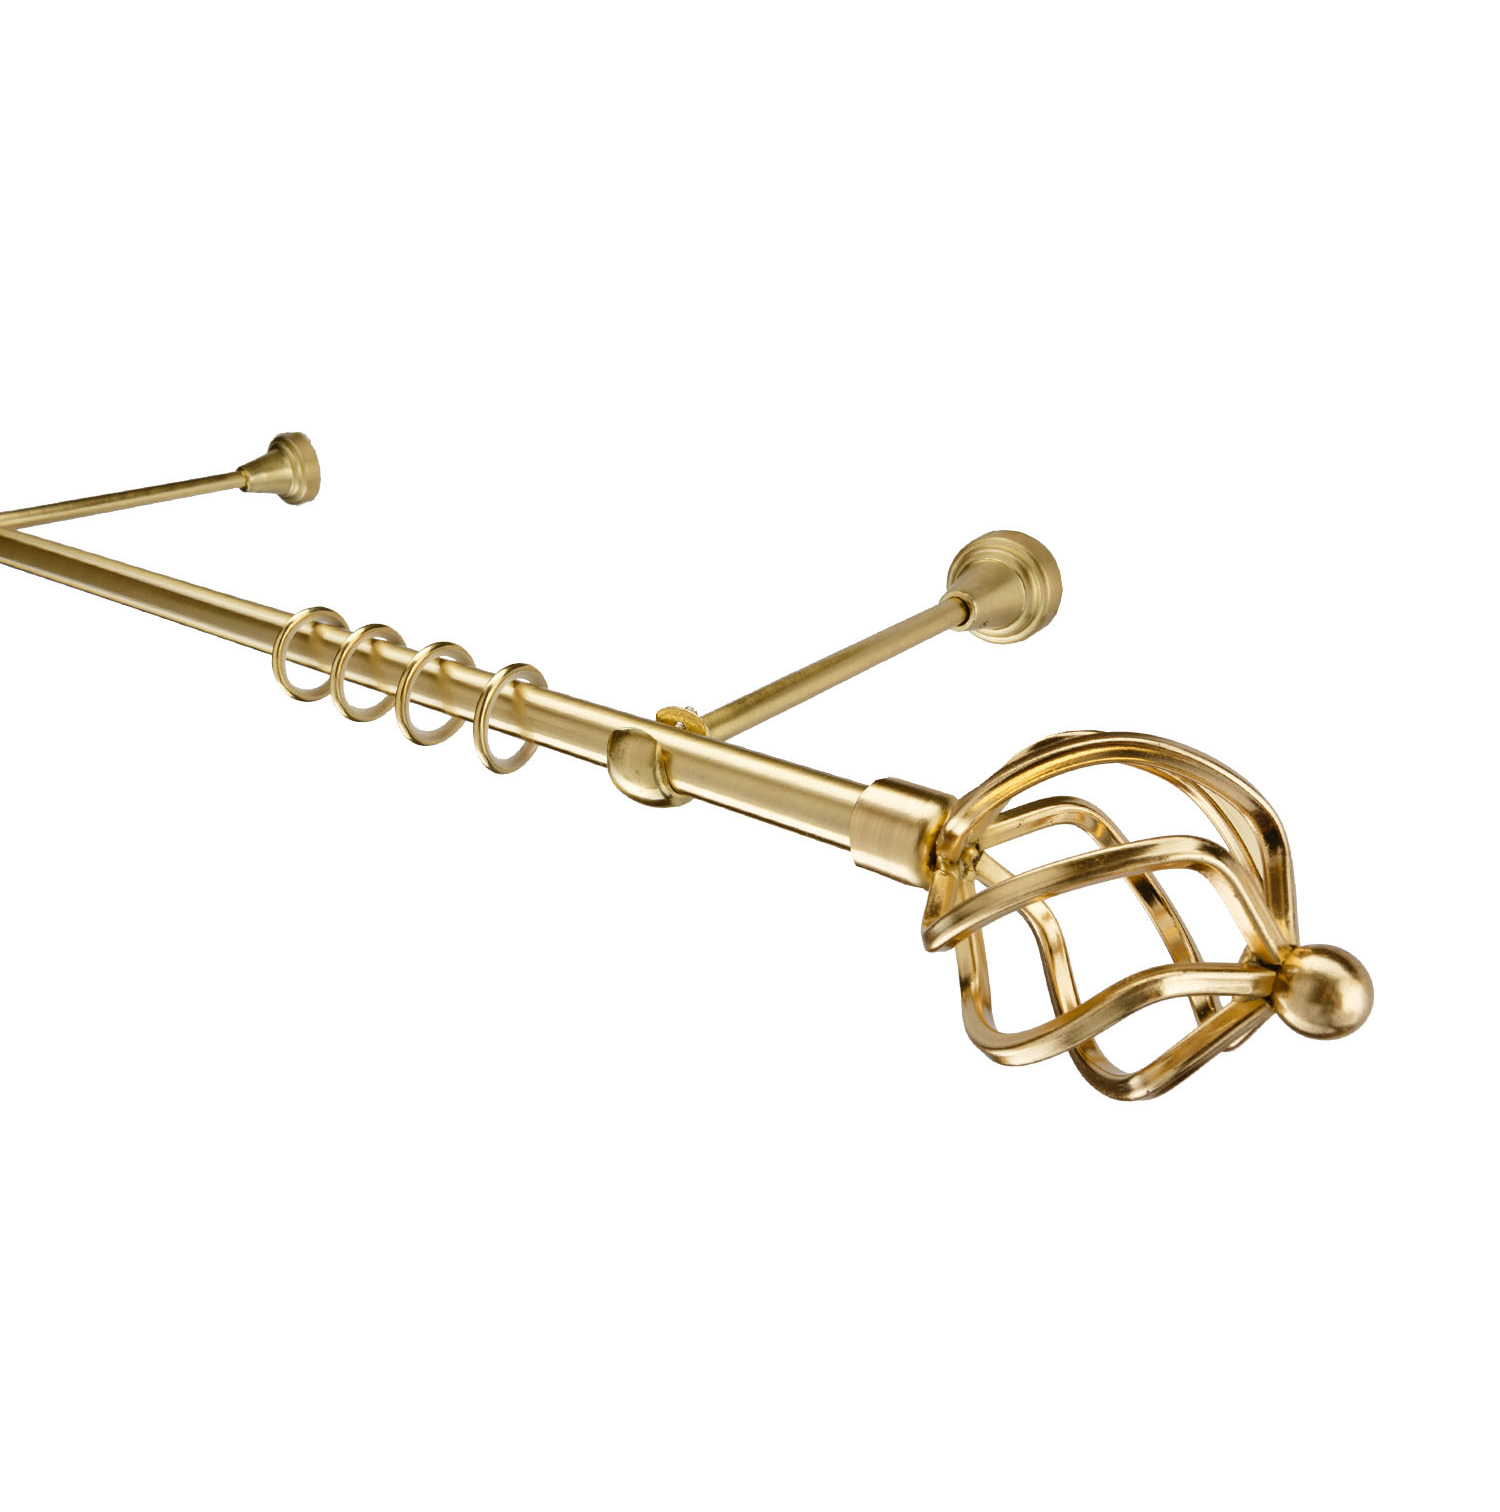 Металлический карниз для штор Солярис, однорядный 16 мм, золото, гладкая штанга, длина 300 см